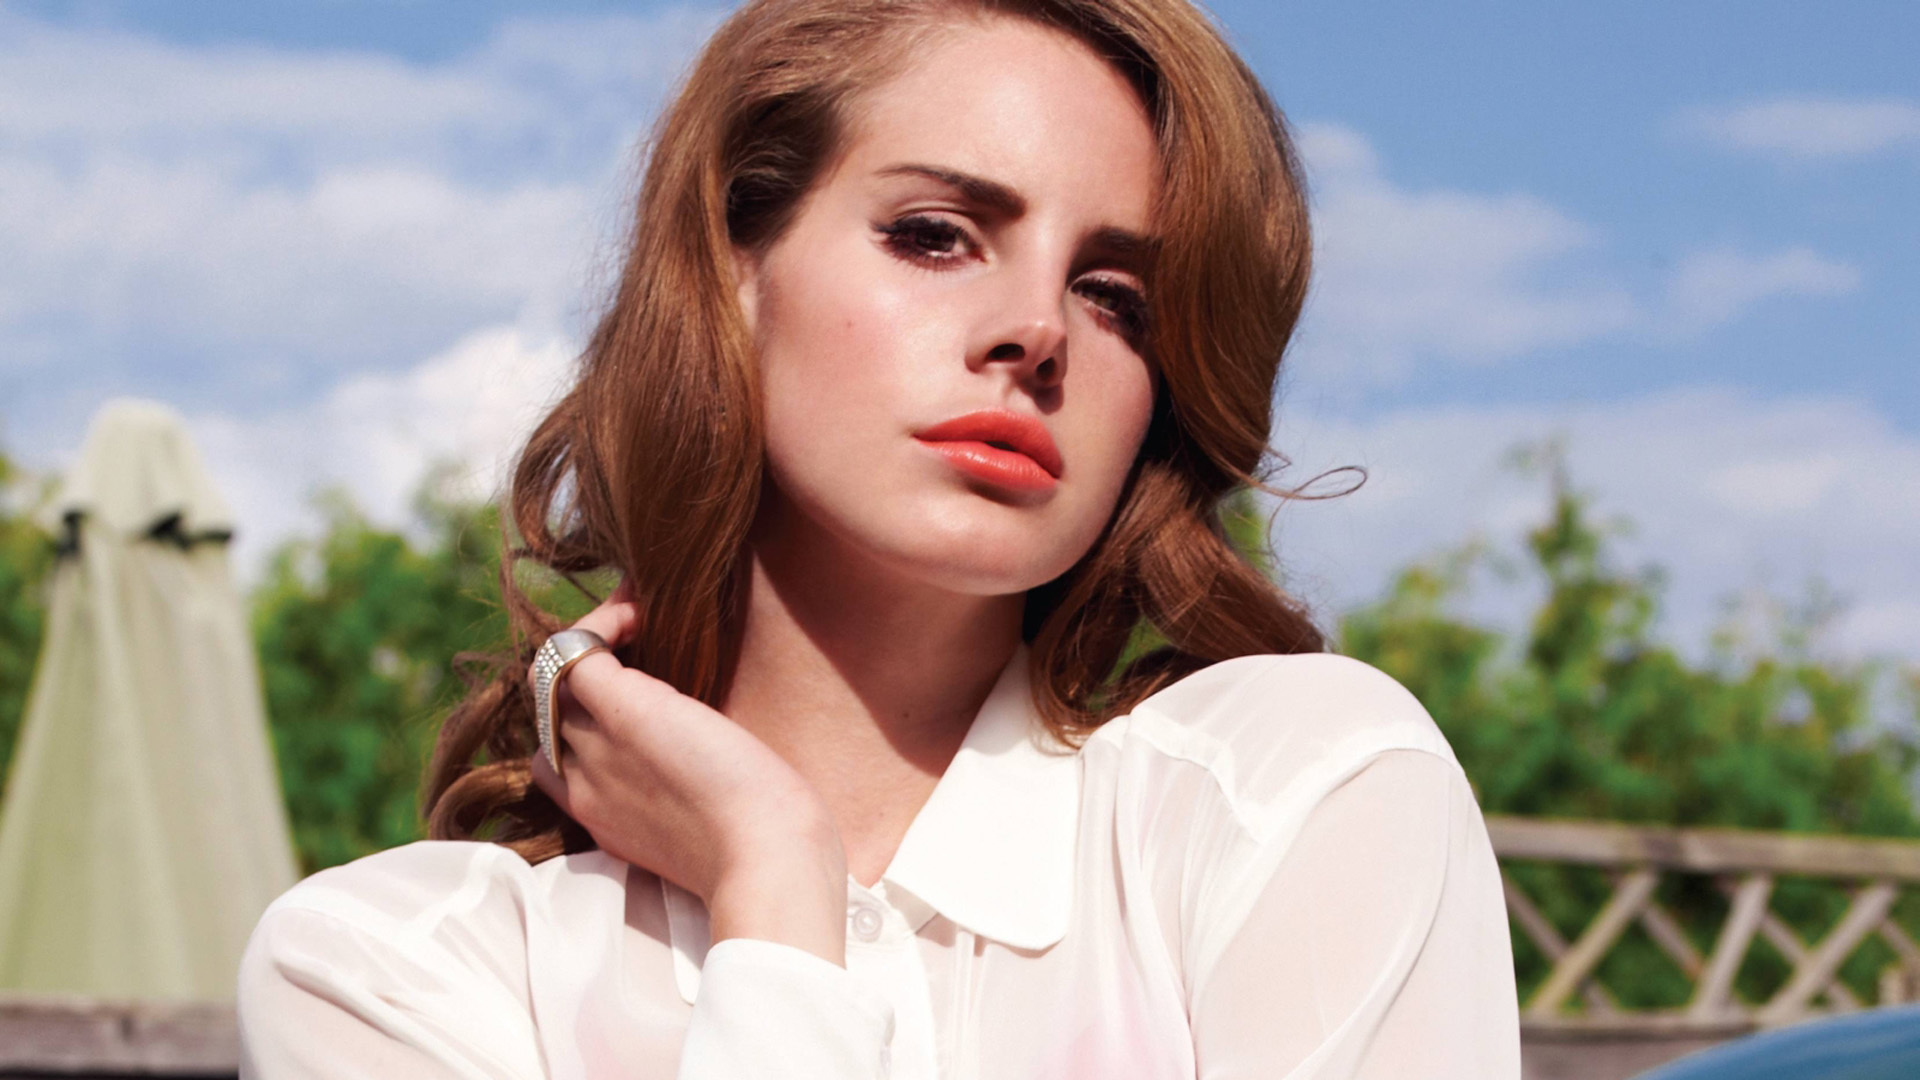 Lana Del Rey Wallpapers. 